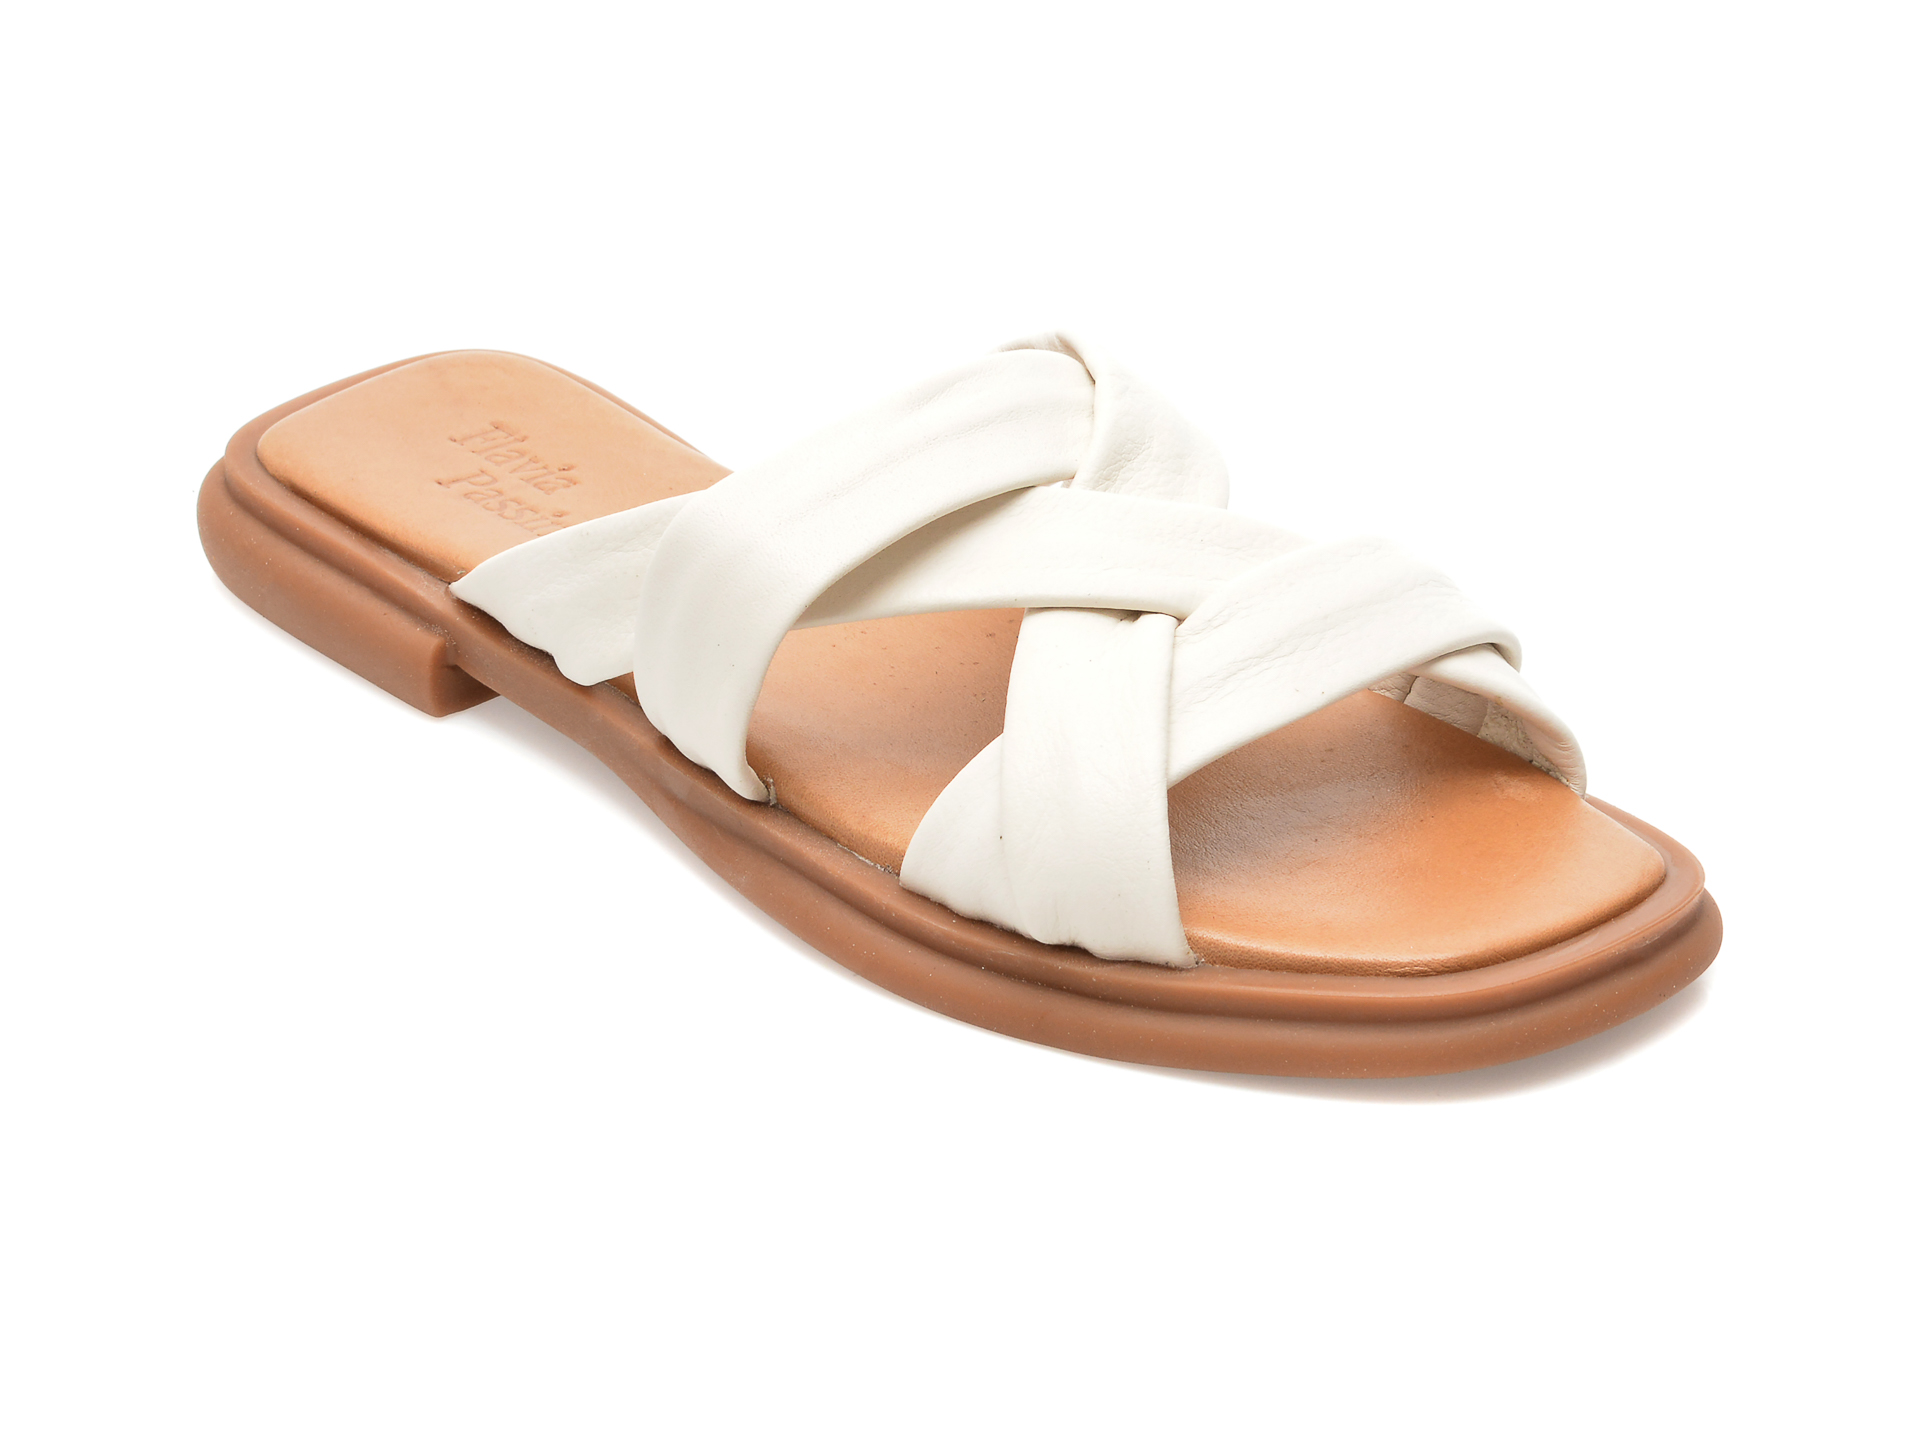 Papuci FLAVIA PASSINI albi, 21322049, din piele naturala Flavia Passini